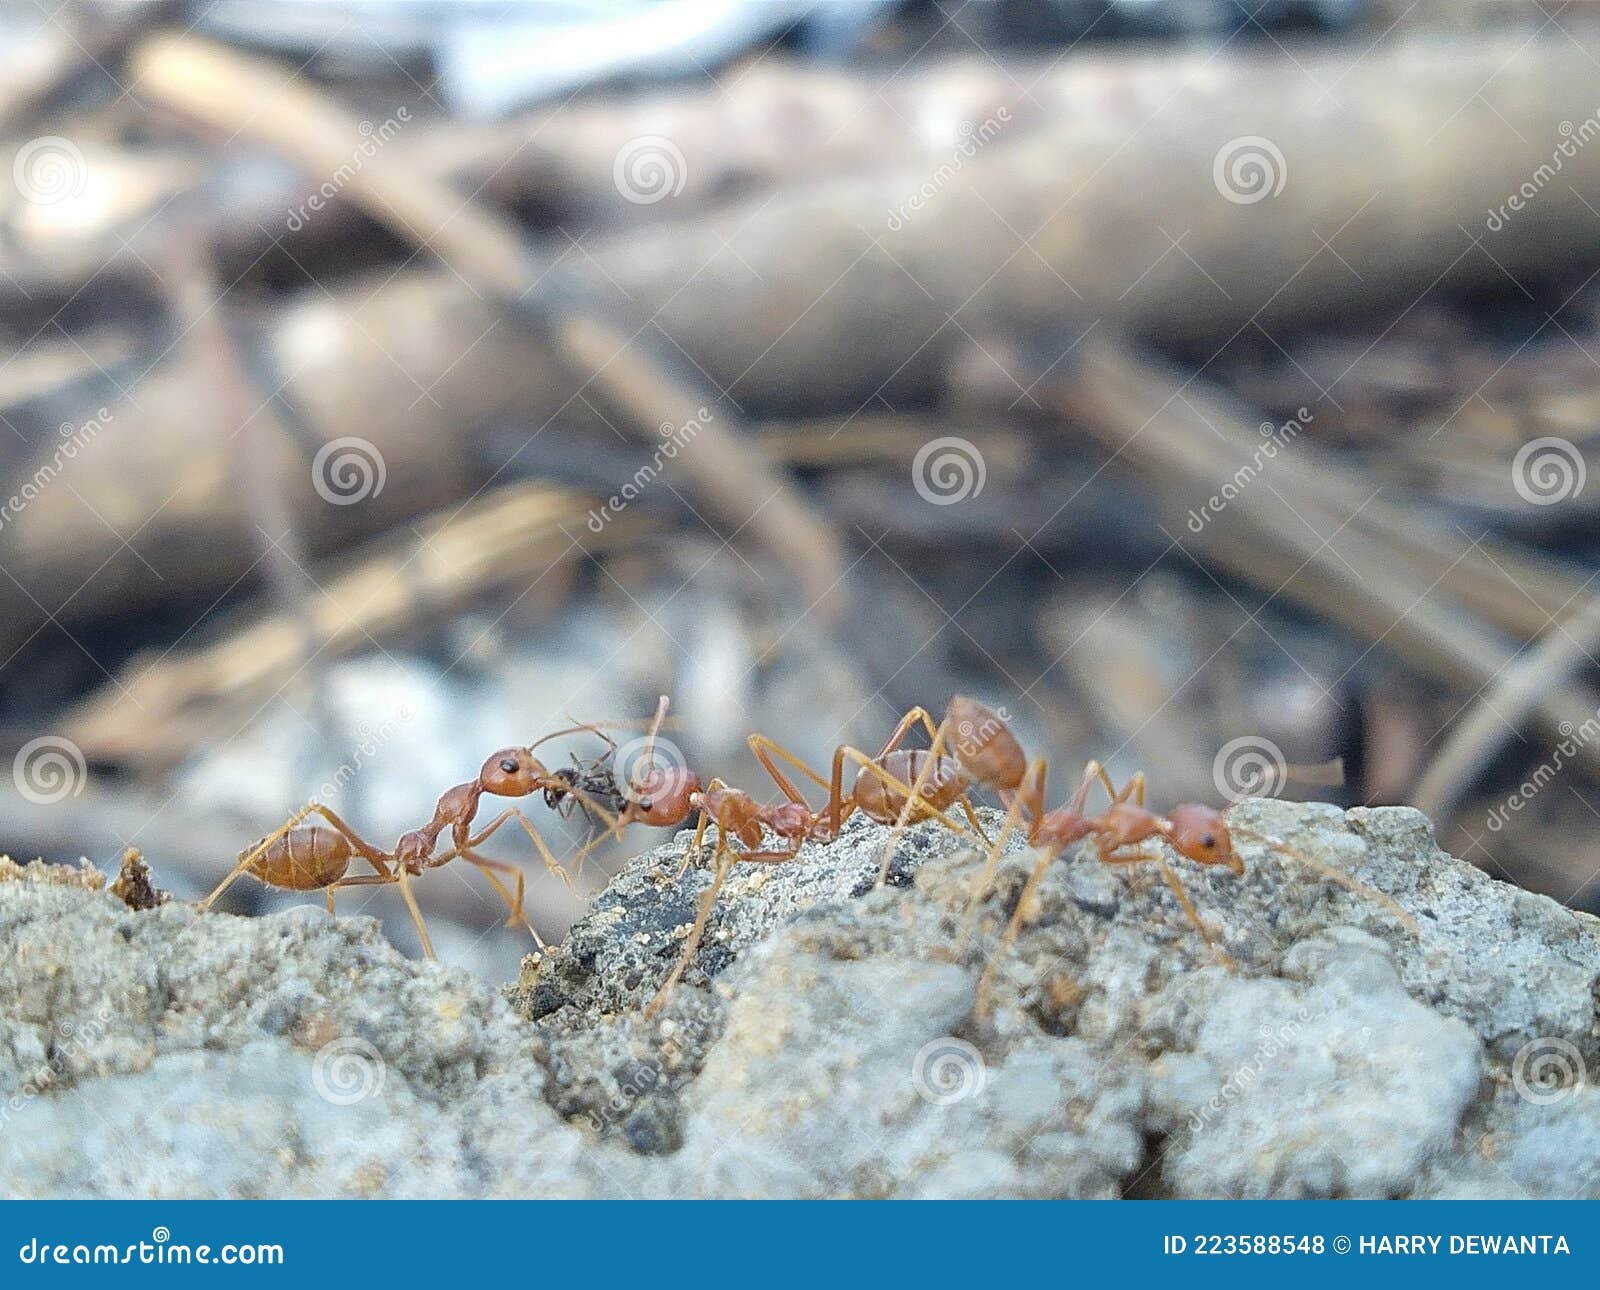 La eficiencia de las colonias de hormigas en alcanzar sus metas